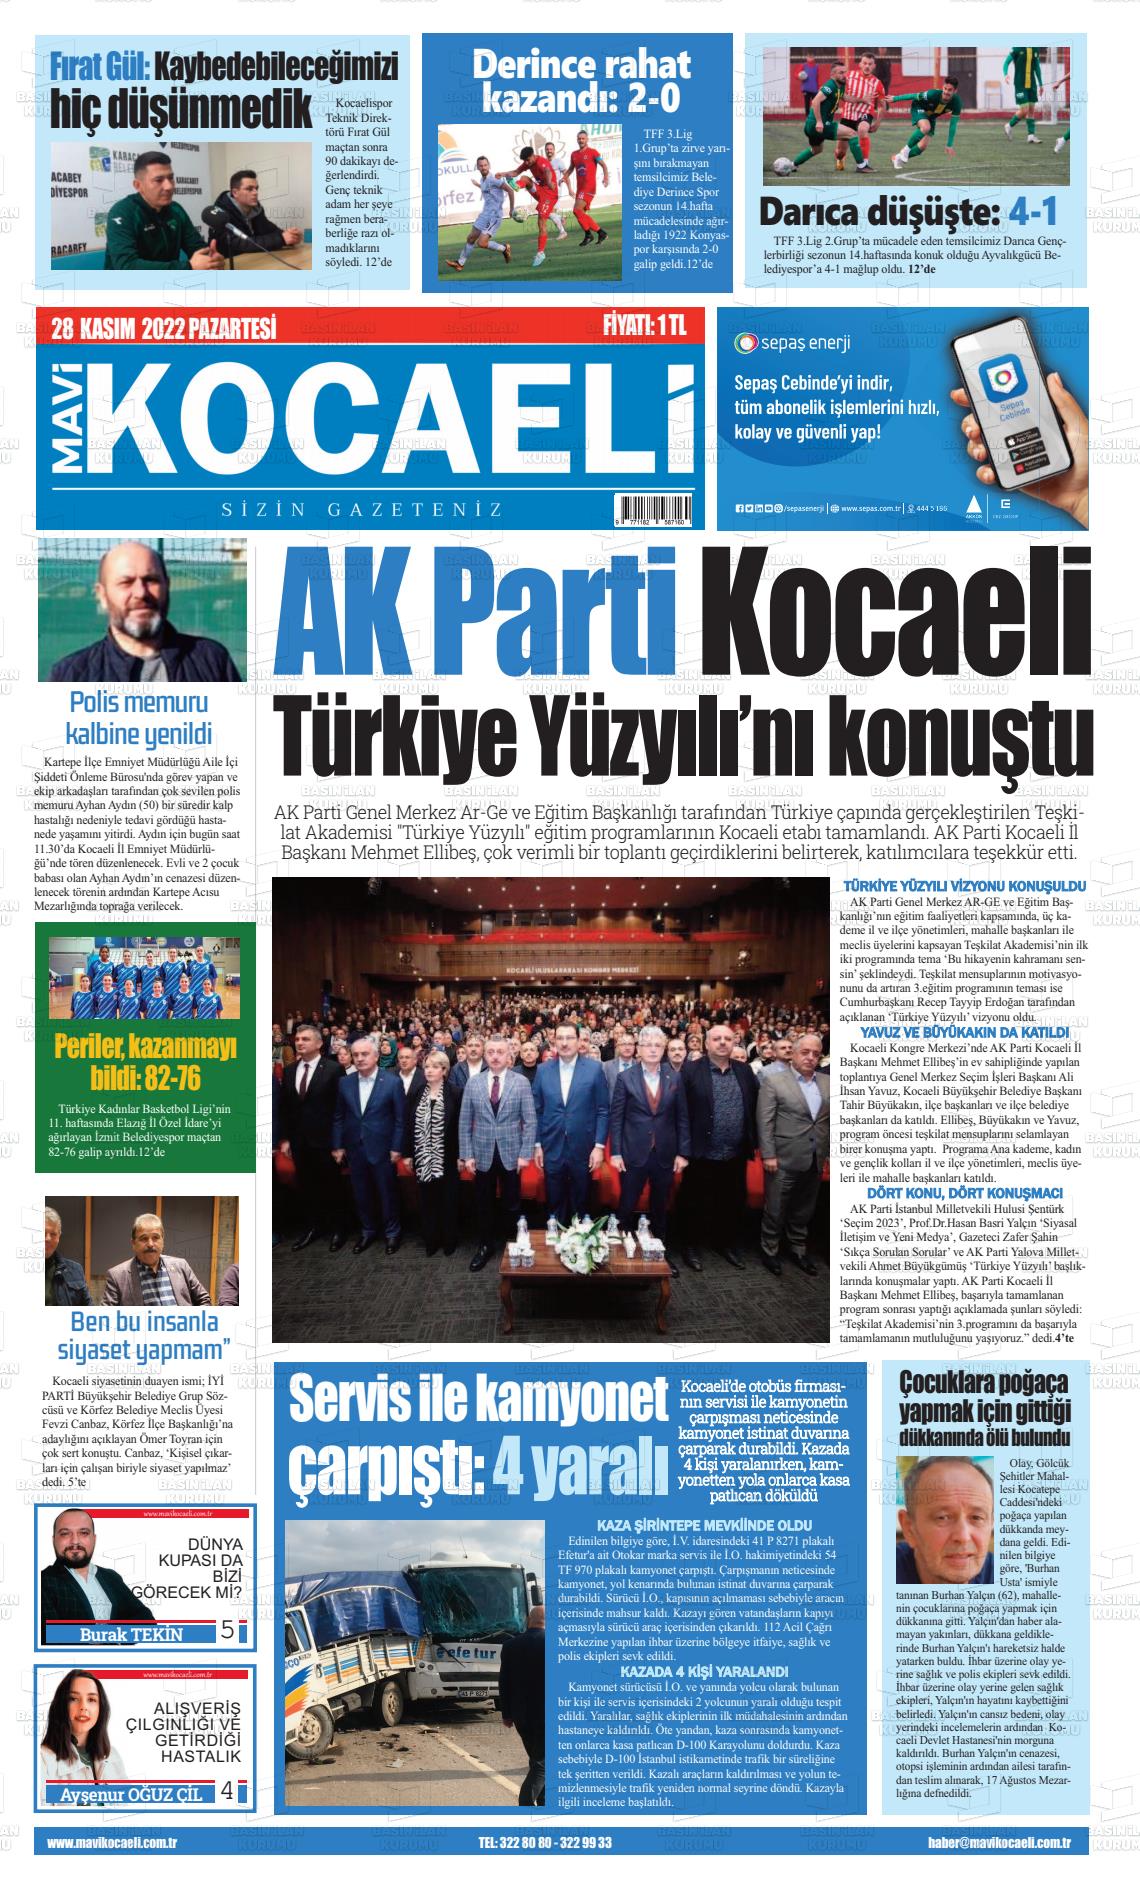 28 Kasım 2022 Mavi Kocaeli Gazete Manşeti